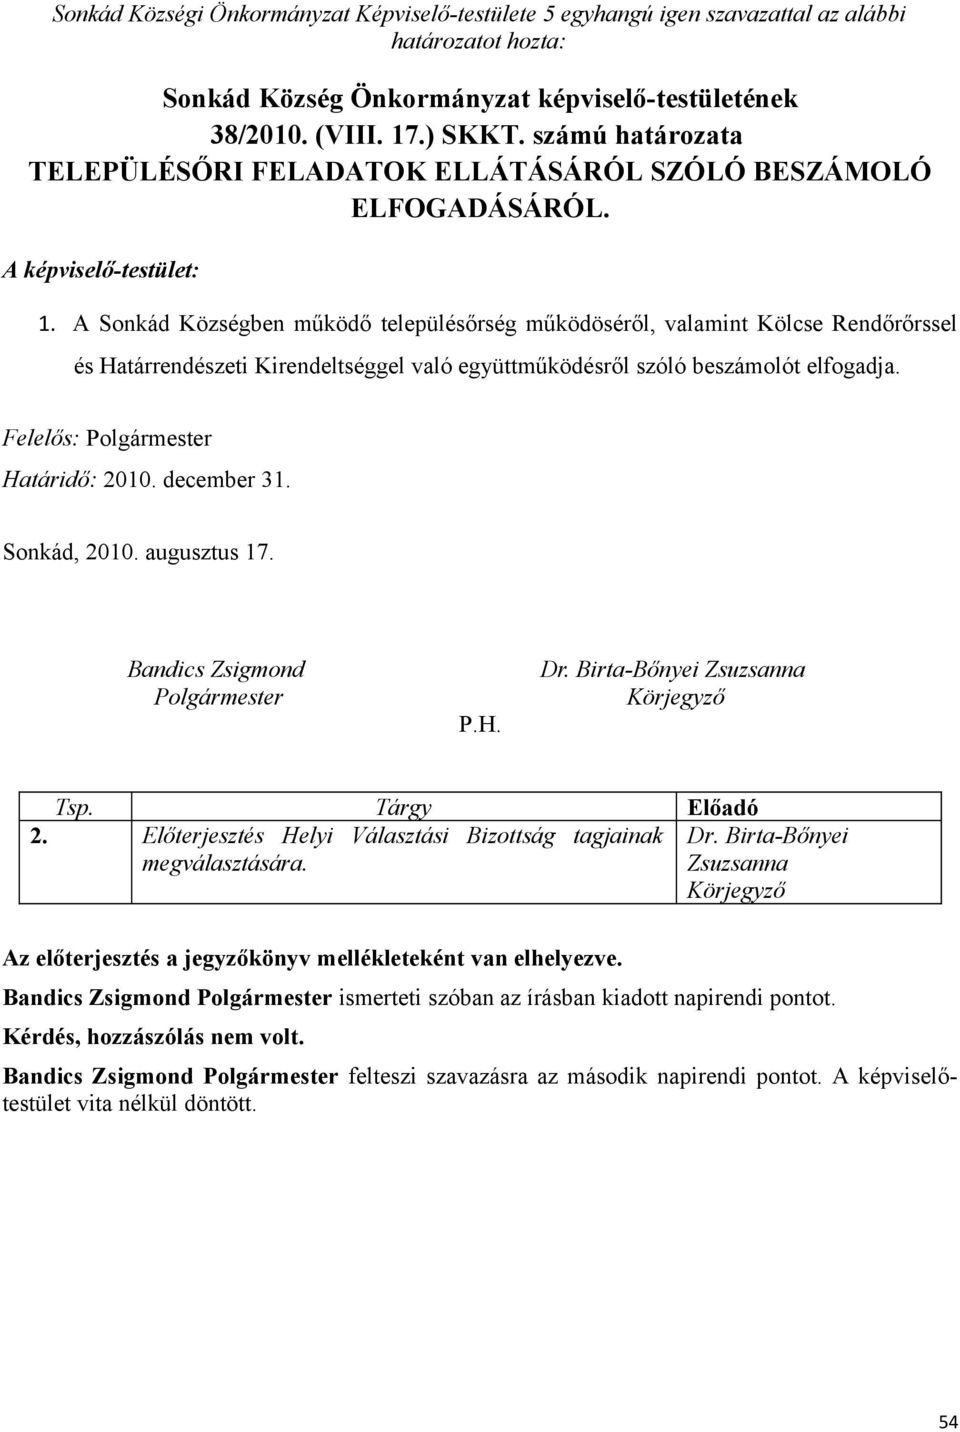 A Sonkád Községben működő településőrség működöséről, valamint Kölcse Rendőrőrssel és Határrendészeti Kirendeltséggel való együttműködésről szóló beszámolót elfogadja. Felelős: Határidő: 2010.